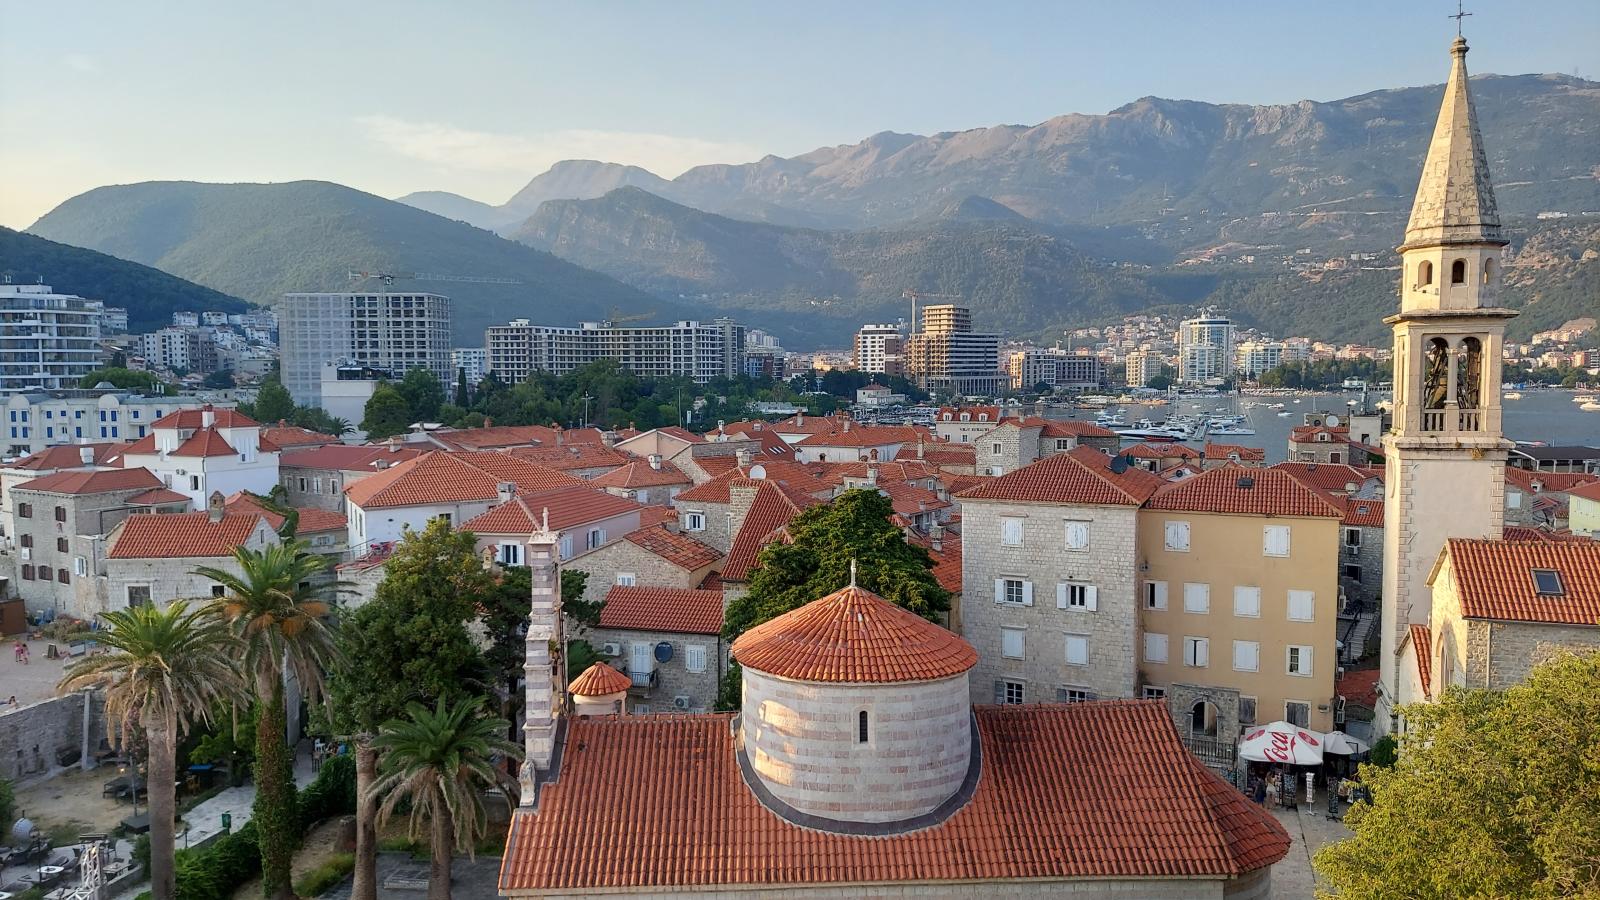 View of Budva, Montenegro